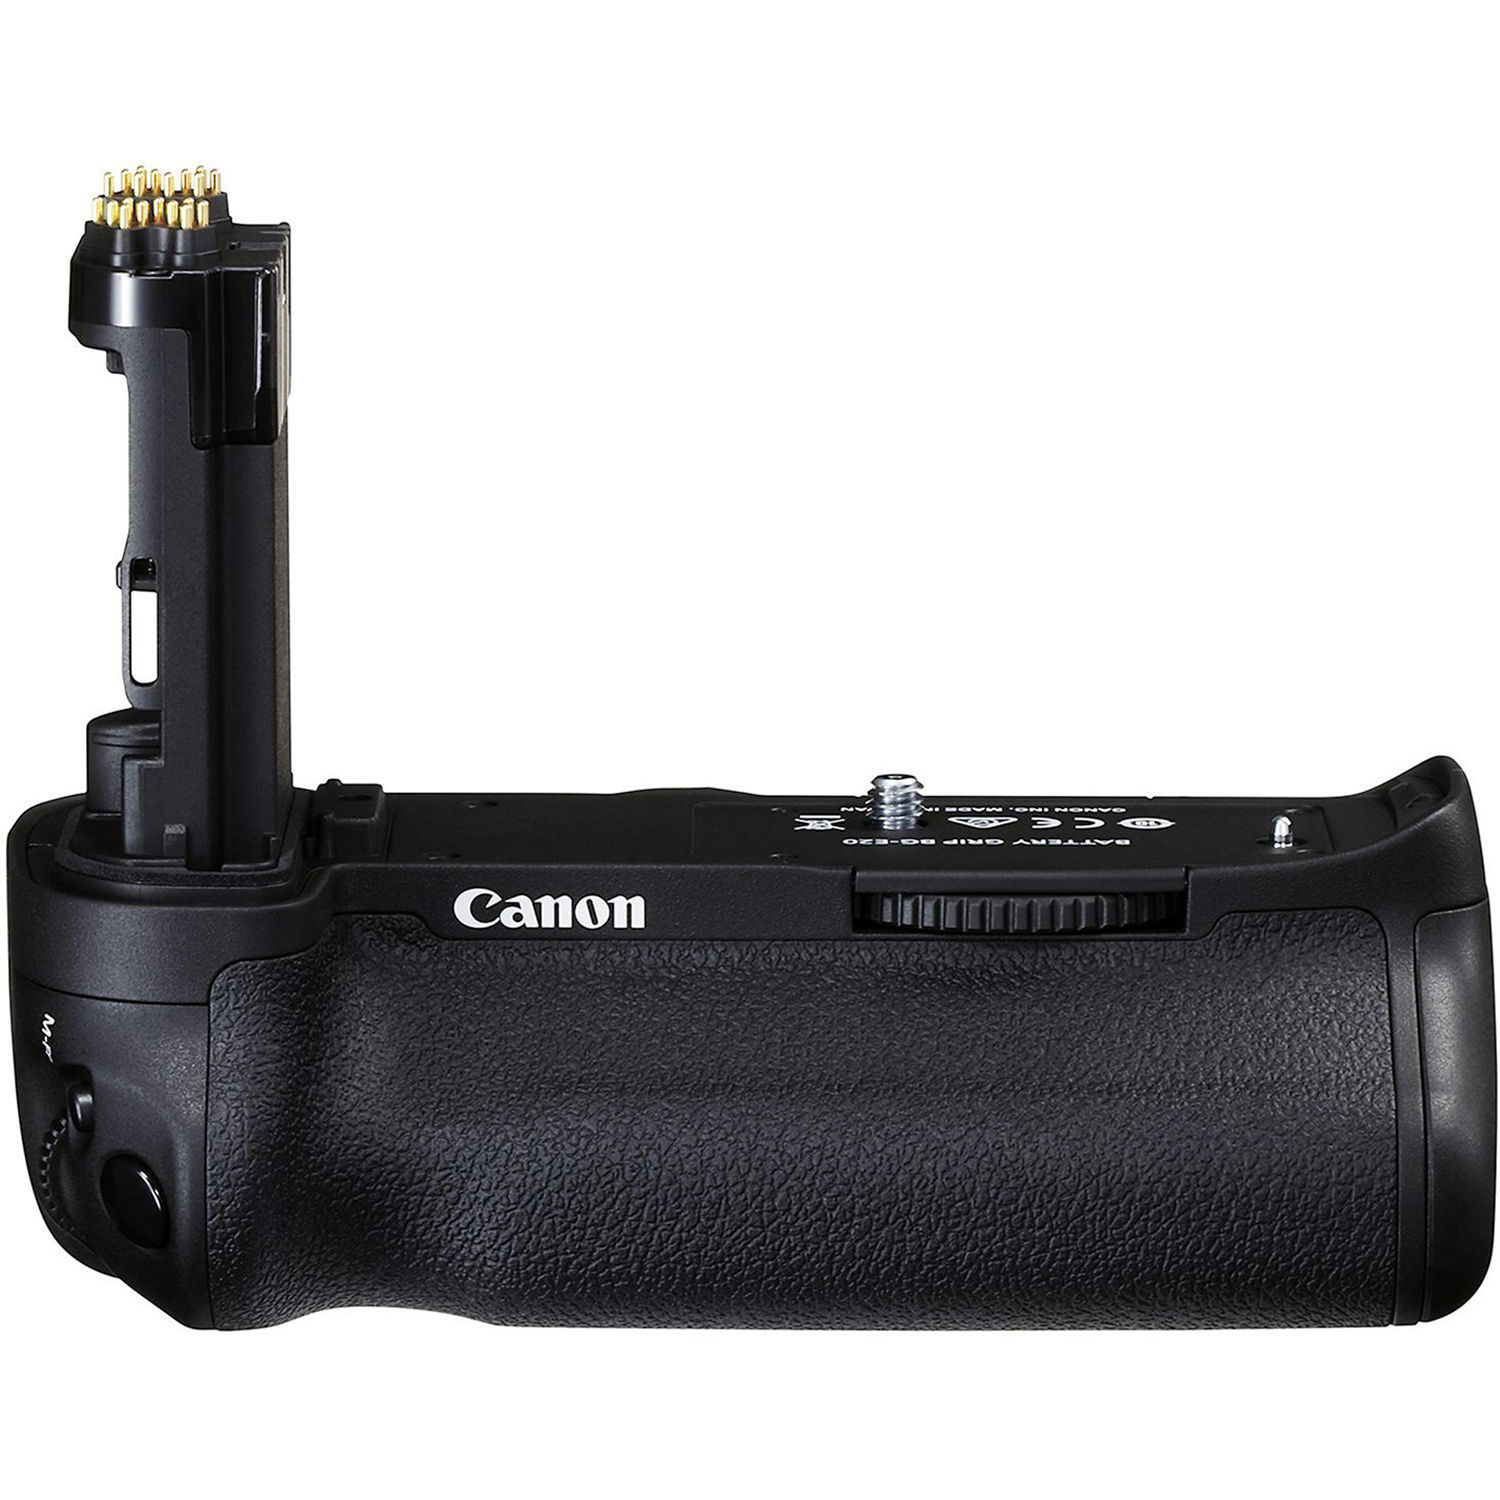 Poign/ée dalimentation pour Canon 5D Mark 4 comme Le BG-E20 avec 2 Batteries LP-E6 1600 mAh et t/él/écommande 2,4 GHz